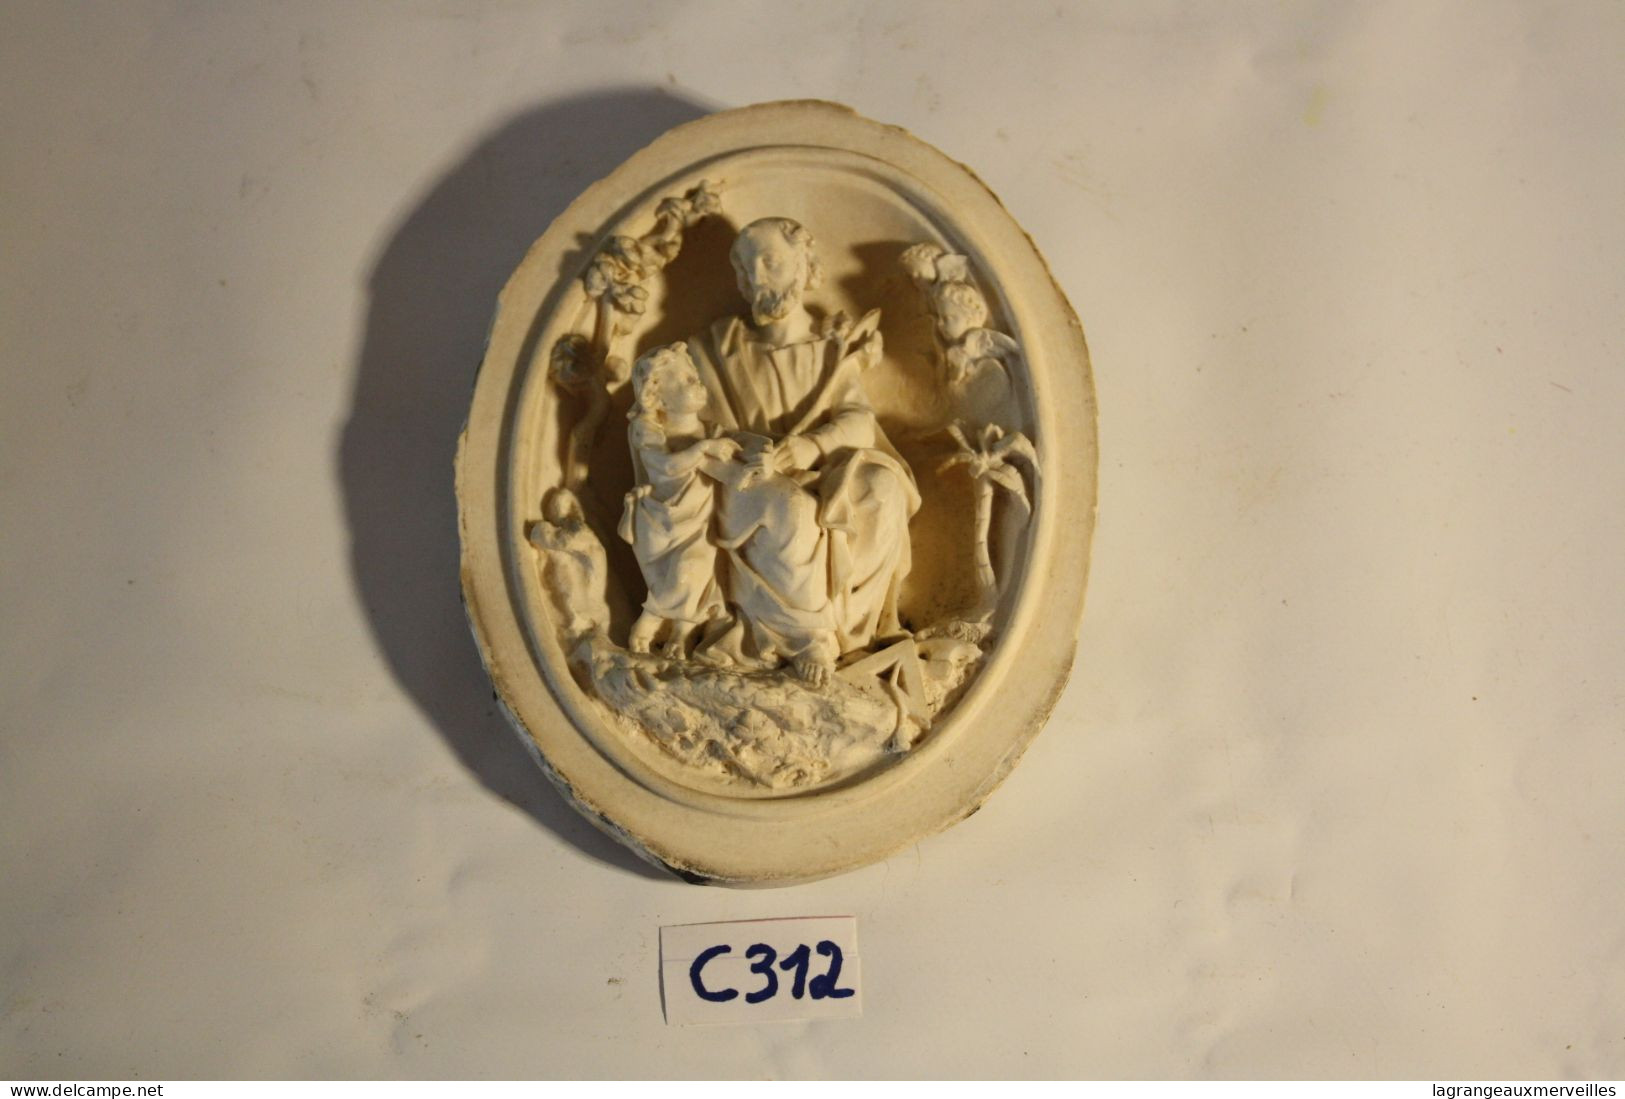 C312 Ancien bas relief religieux - art italien - pièce d'exception -